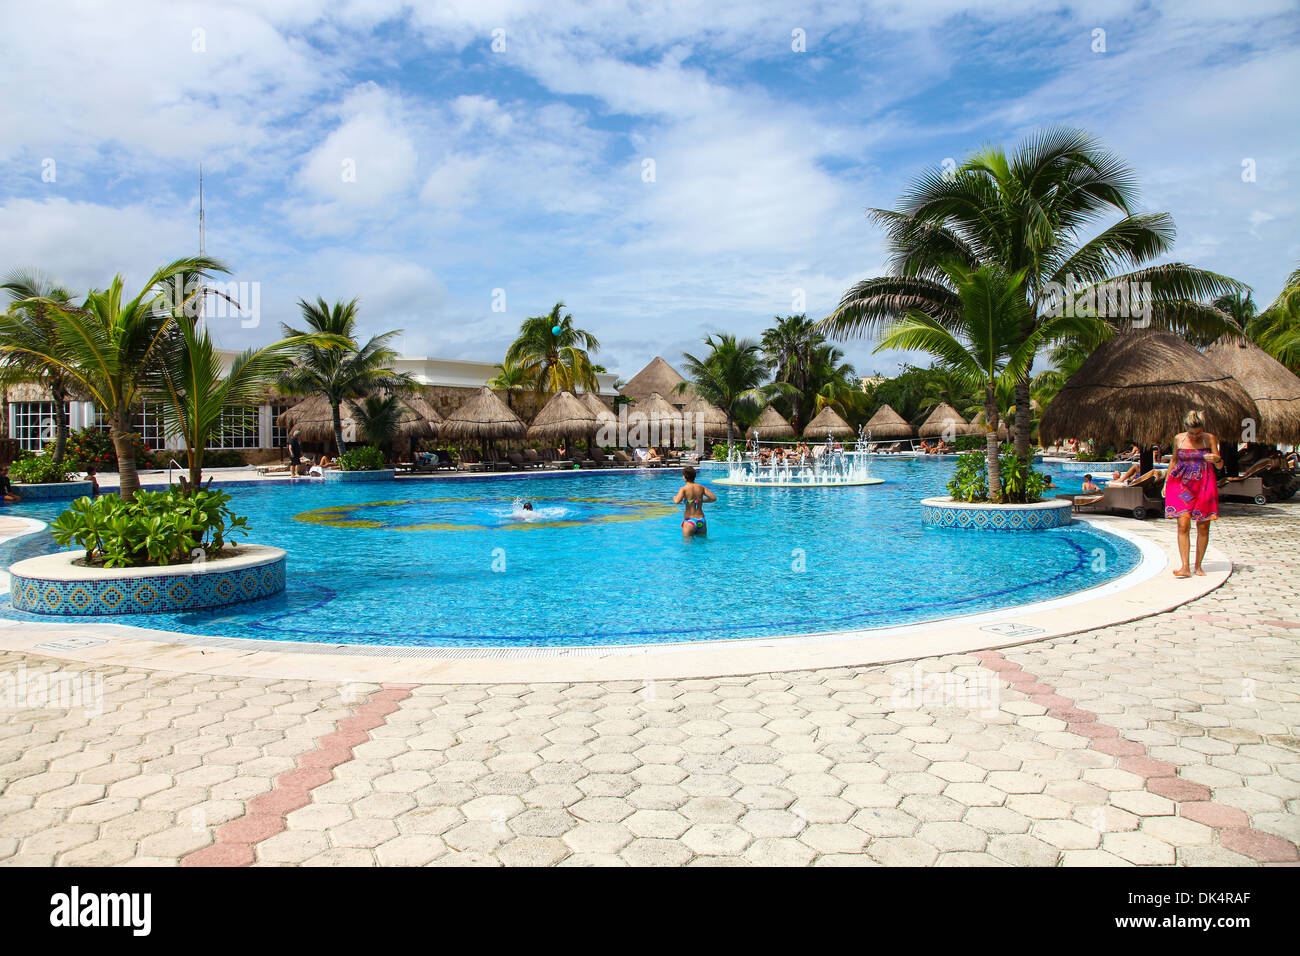 La piscina presso l'hotel 5 stelle Catalonia Royal Tulum in Riviera Maya Cancun Quintana Roo Penisola dello Yucatan Messico America del Nord Foto Stock